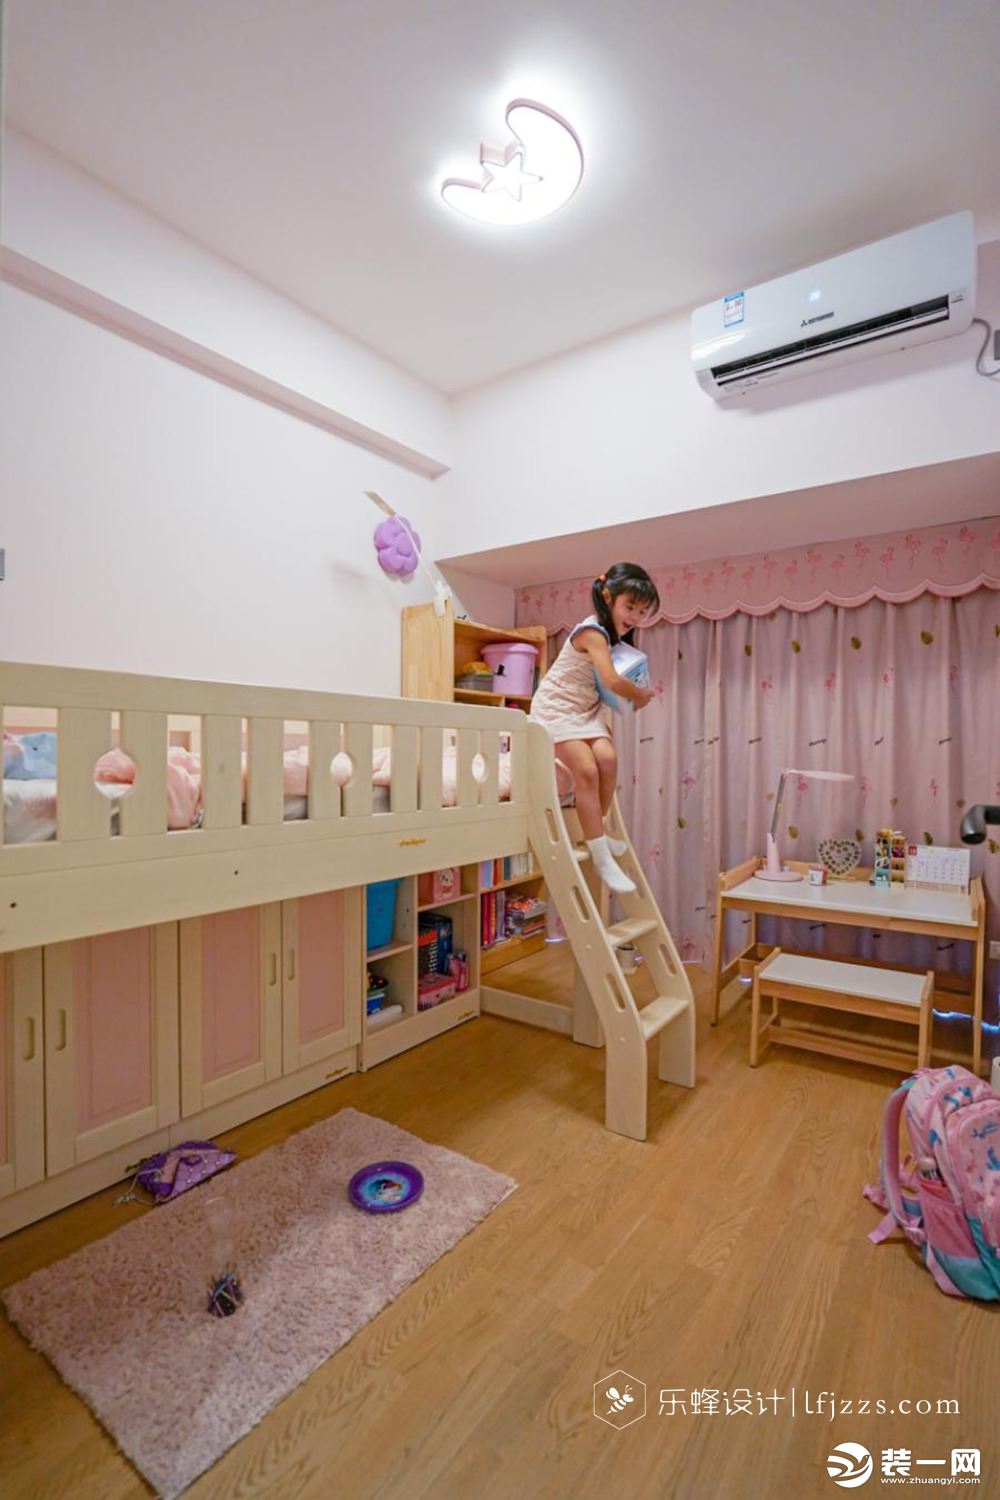 孩子需要更多空间学习和玩耍，在儿童房中打造一个上床下柜的柜体样式。孩子玩具、杂物、衣服。